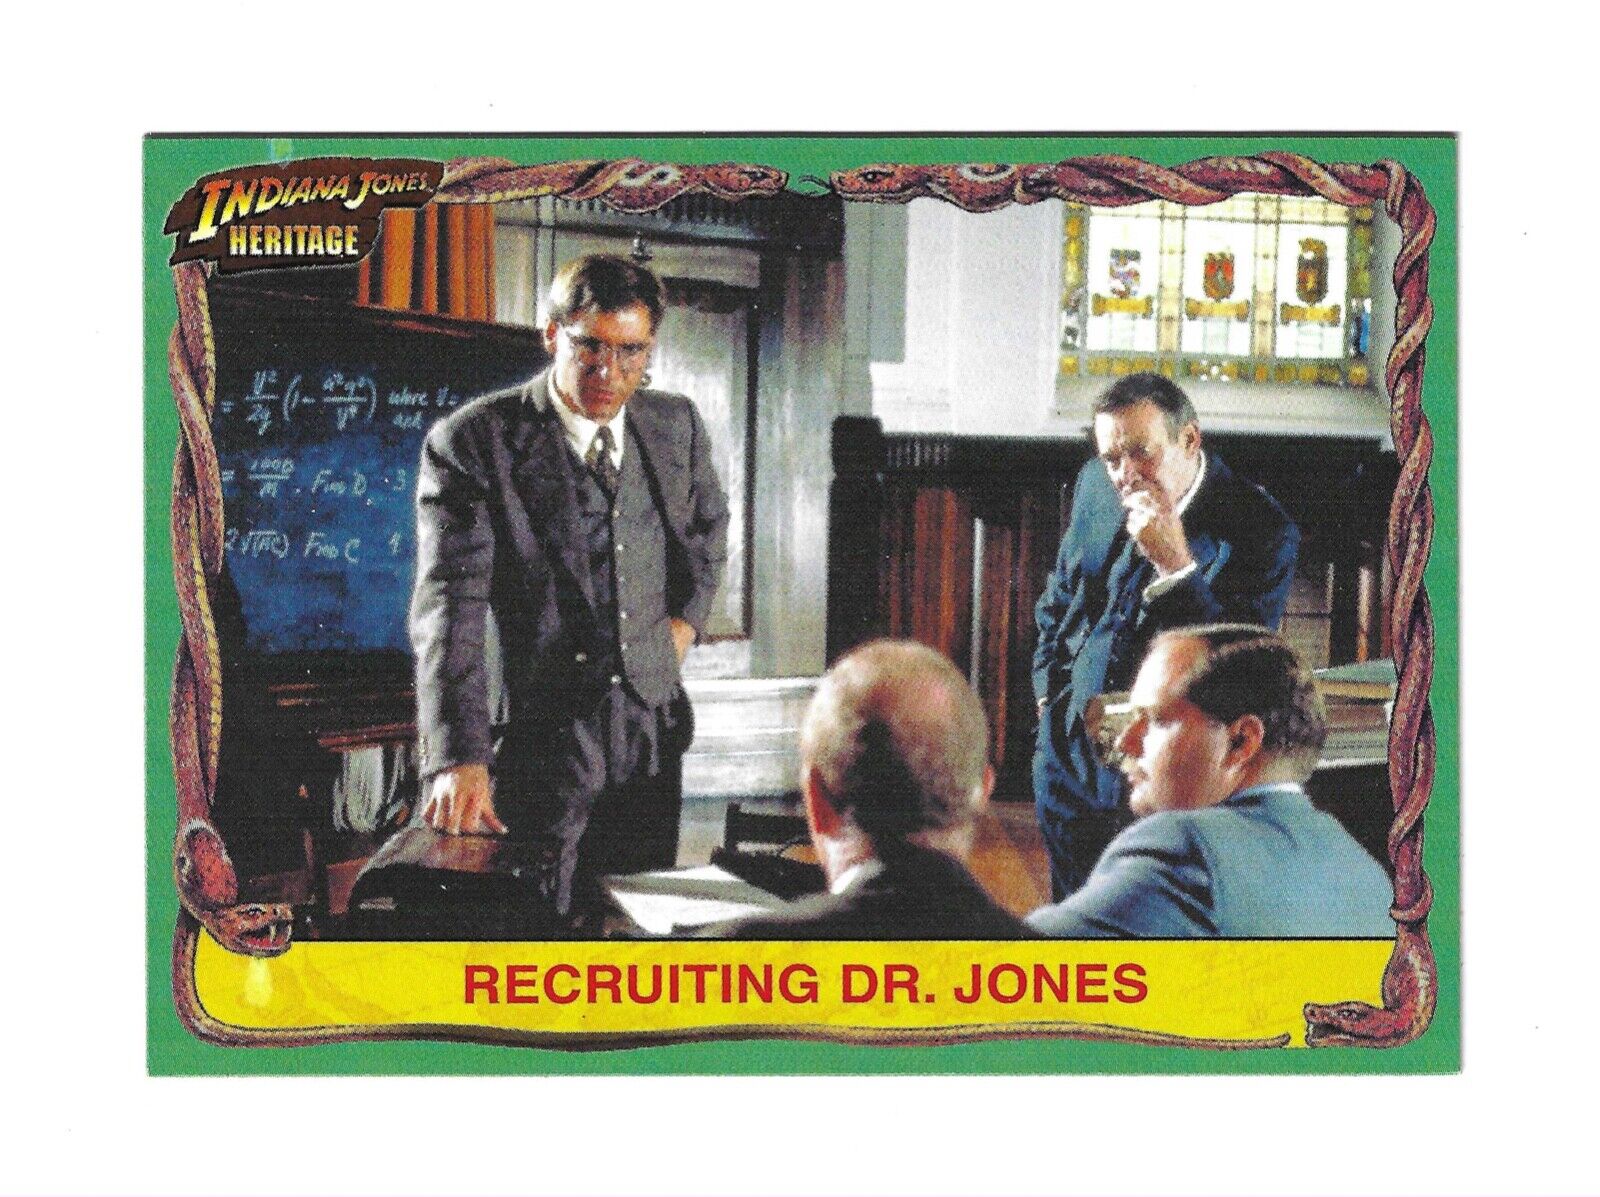 2008 Topps Indiana Jones Heritage #6 Recruiting Dr. Jones